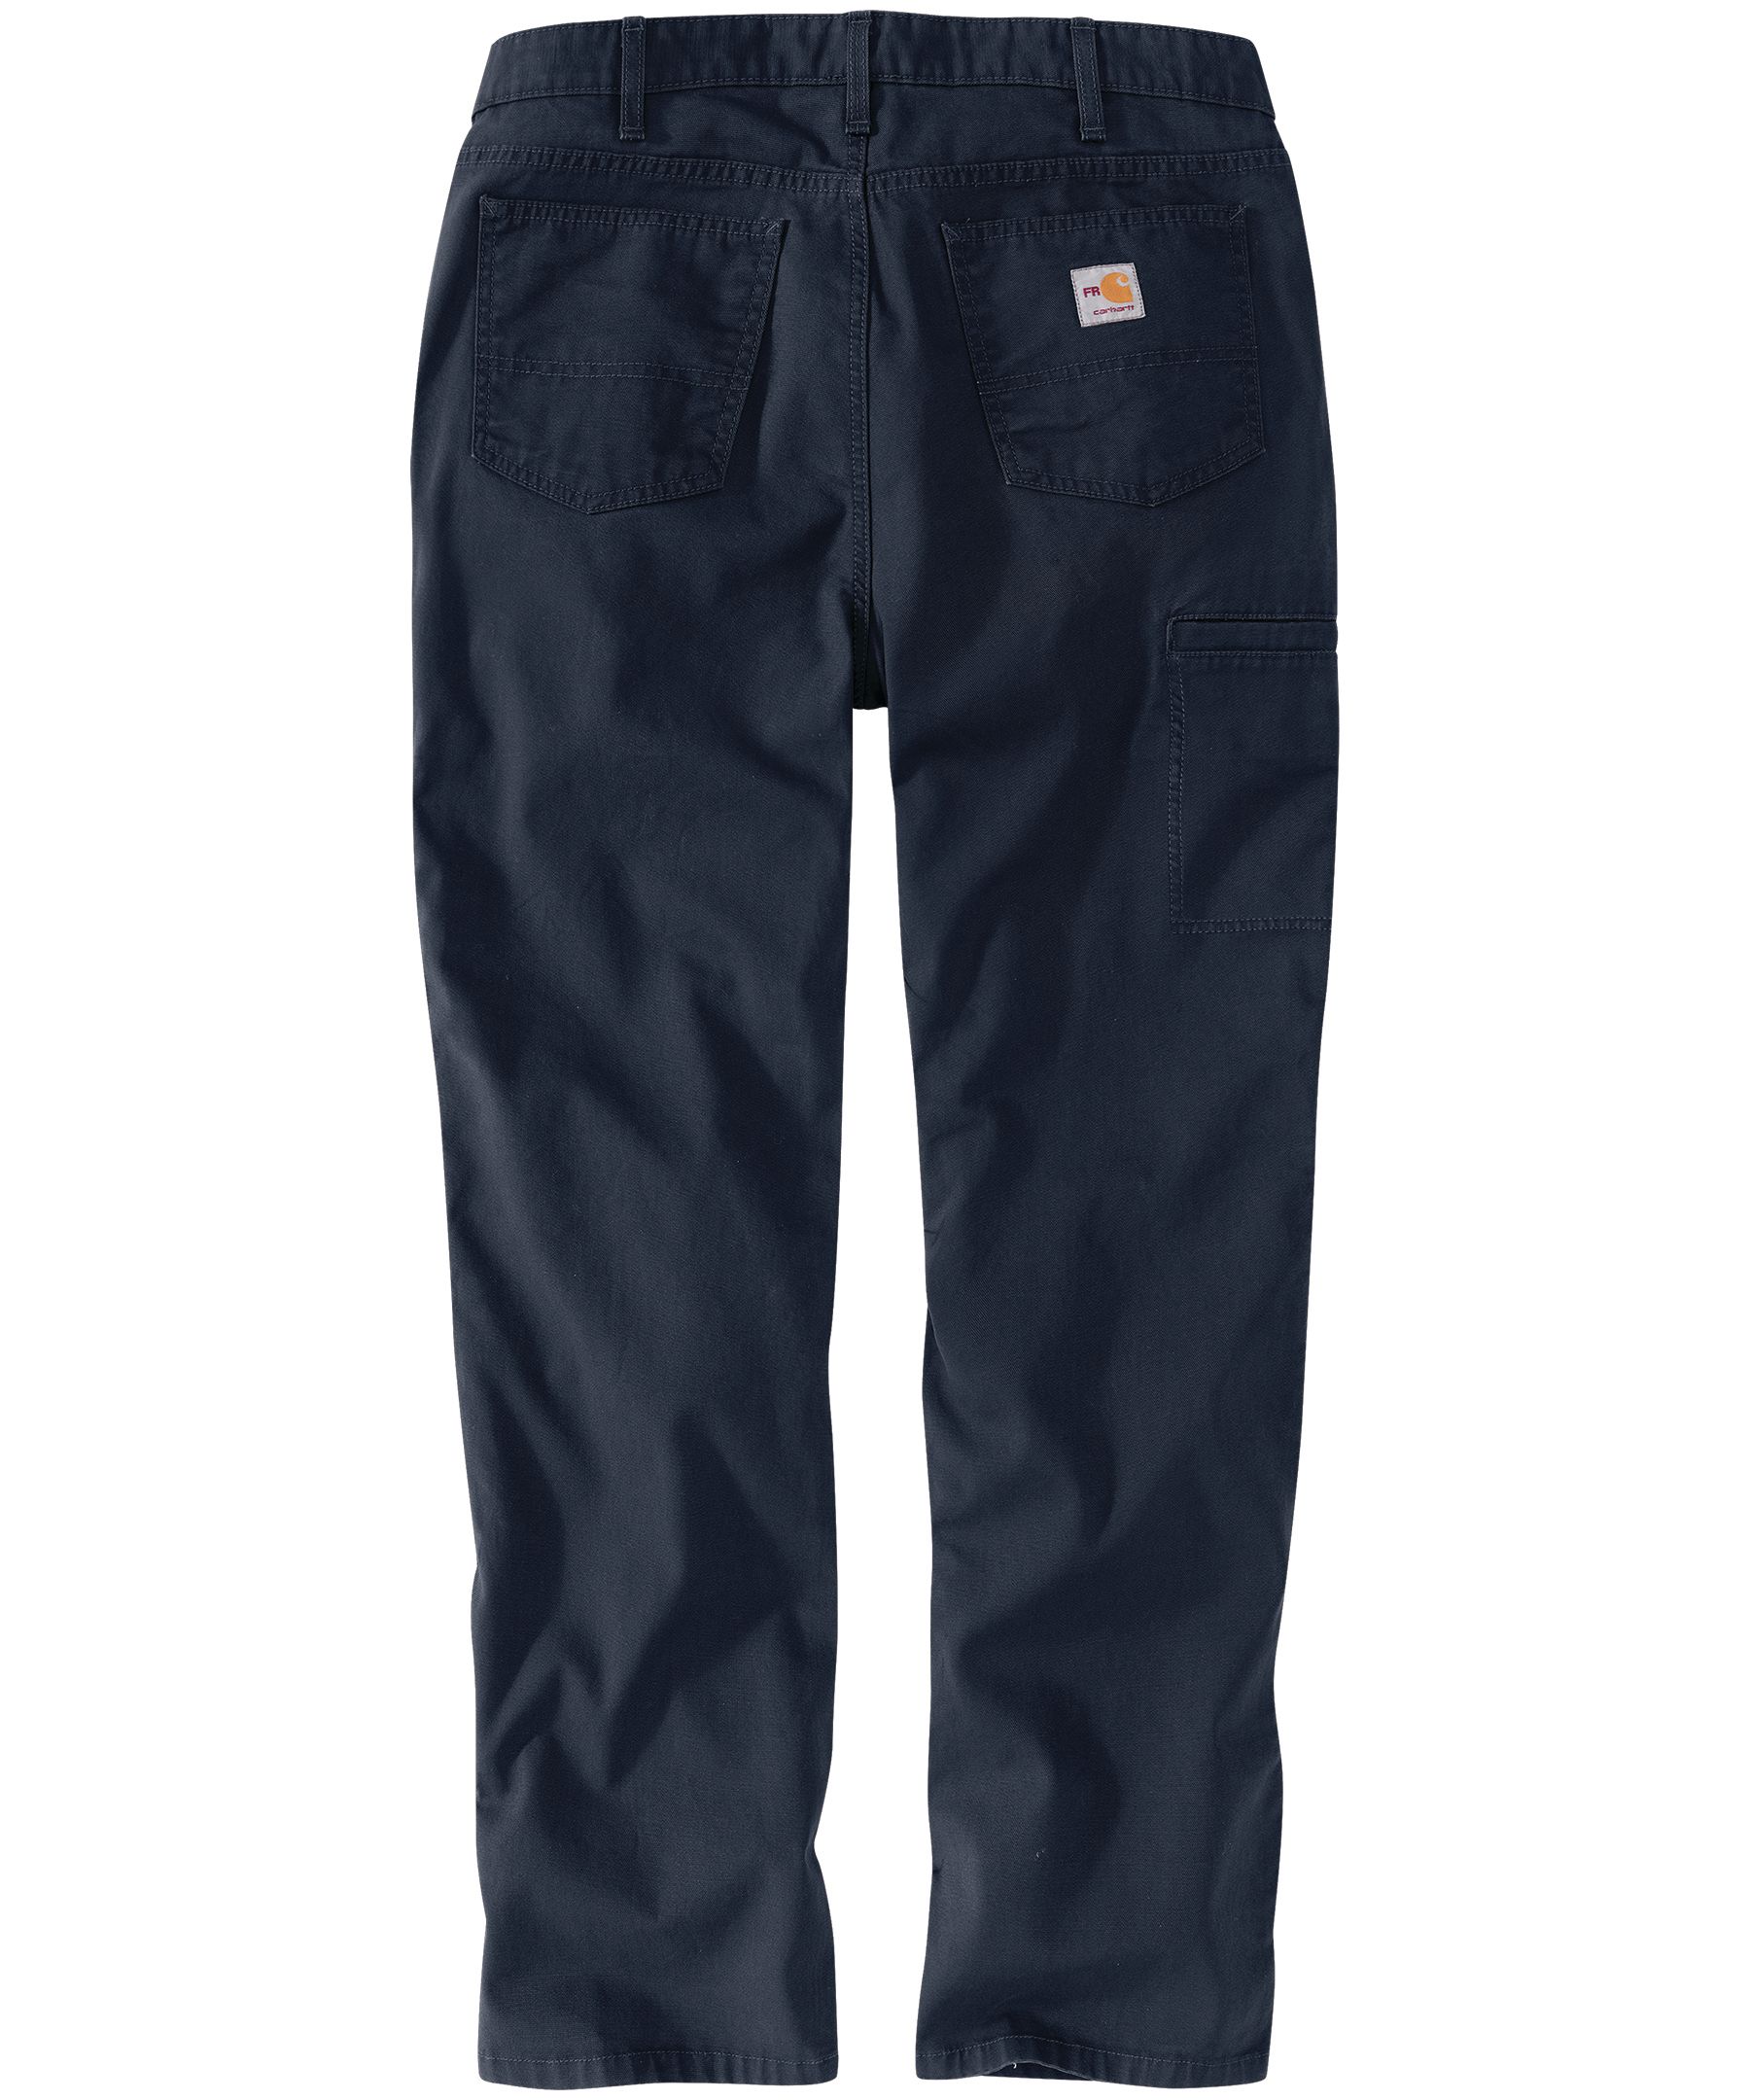 Carhartt Women's Pants: 103104 412 Navy Original Fit Rugged